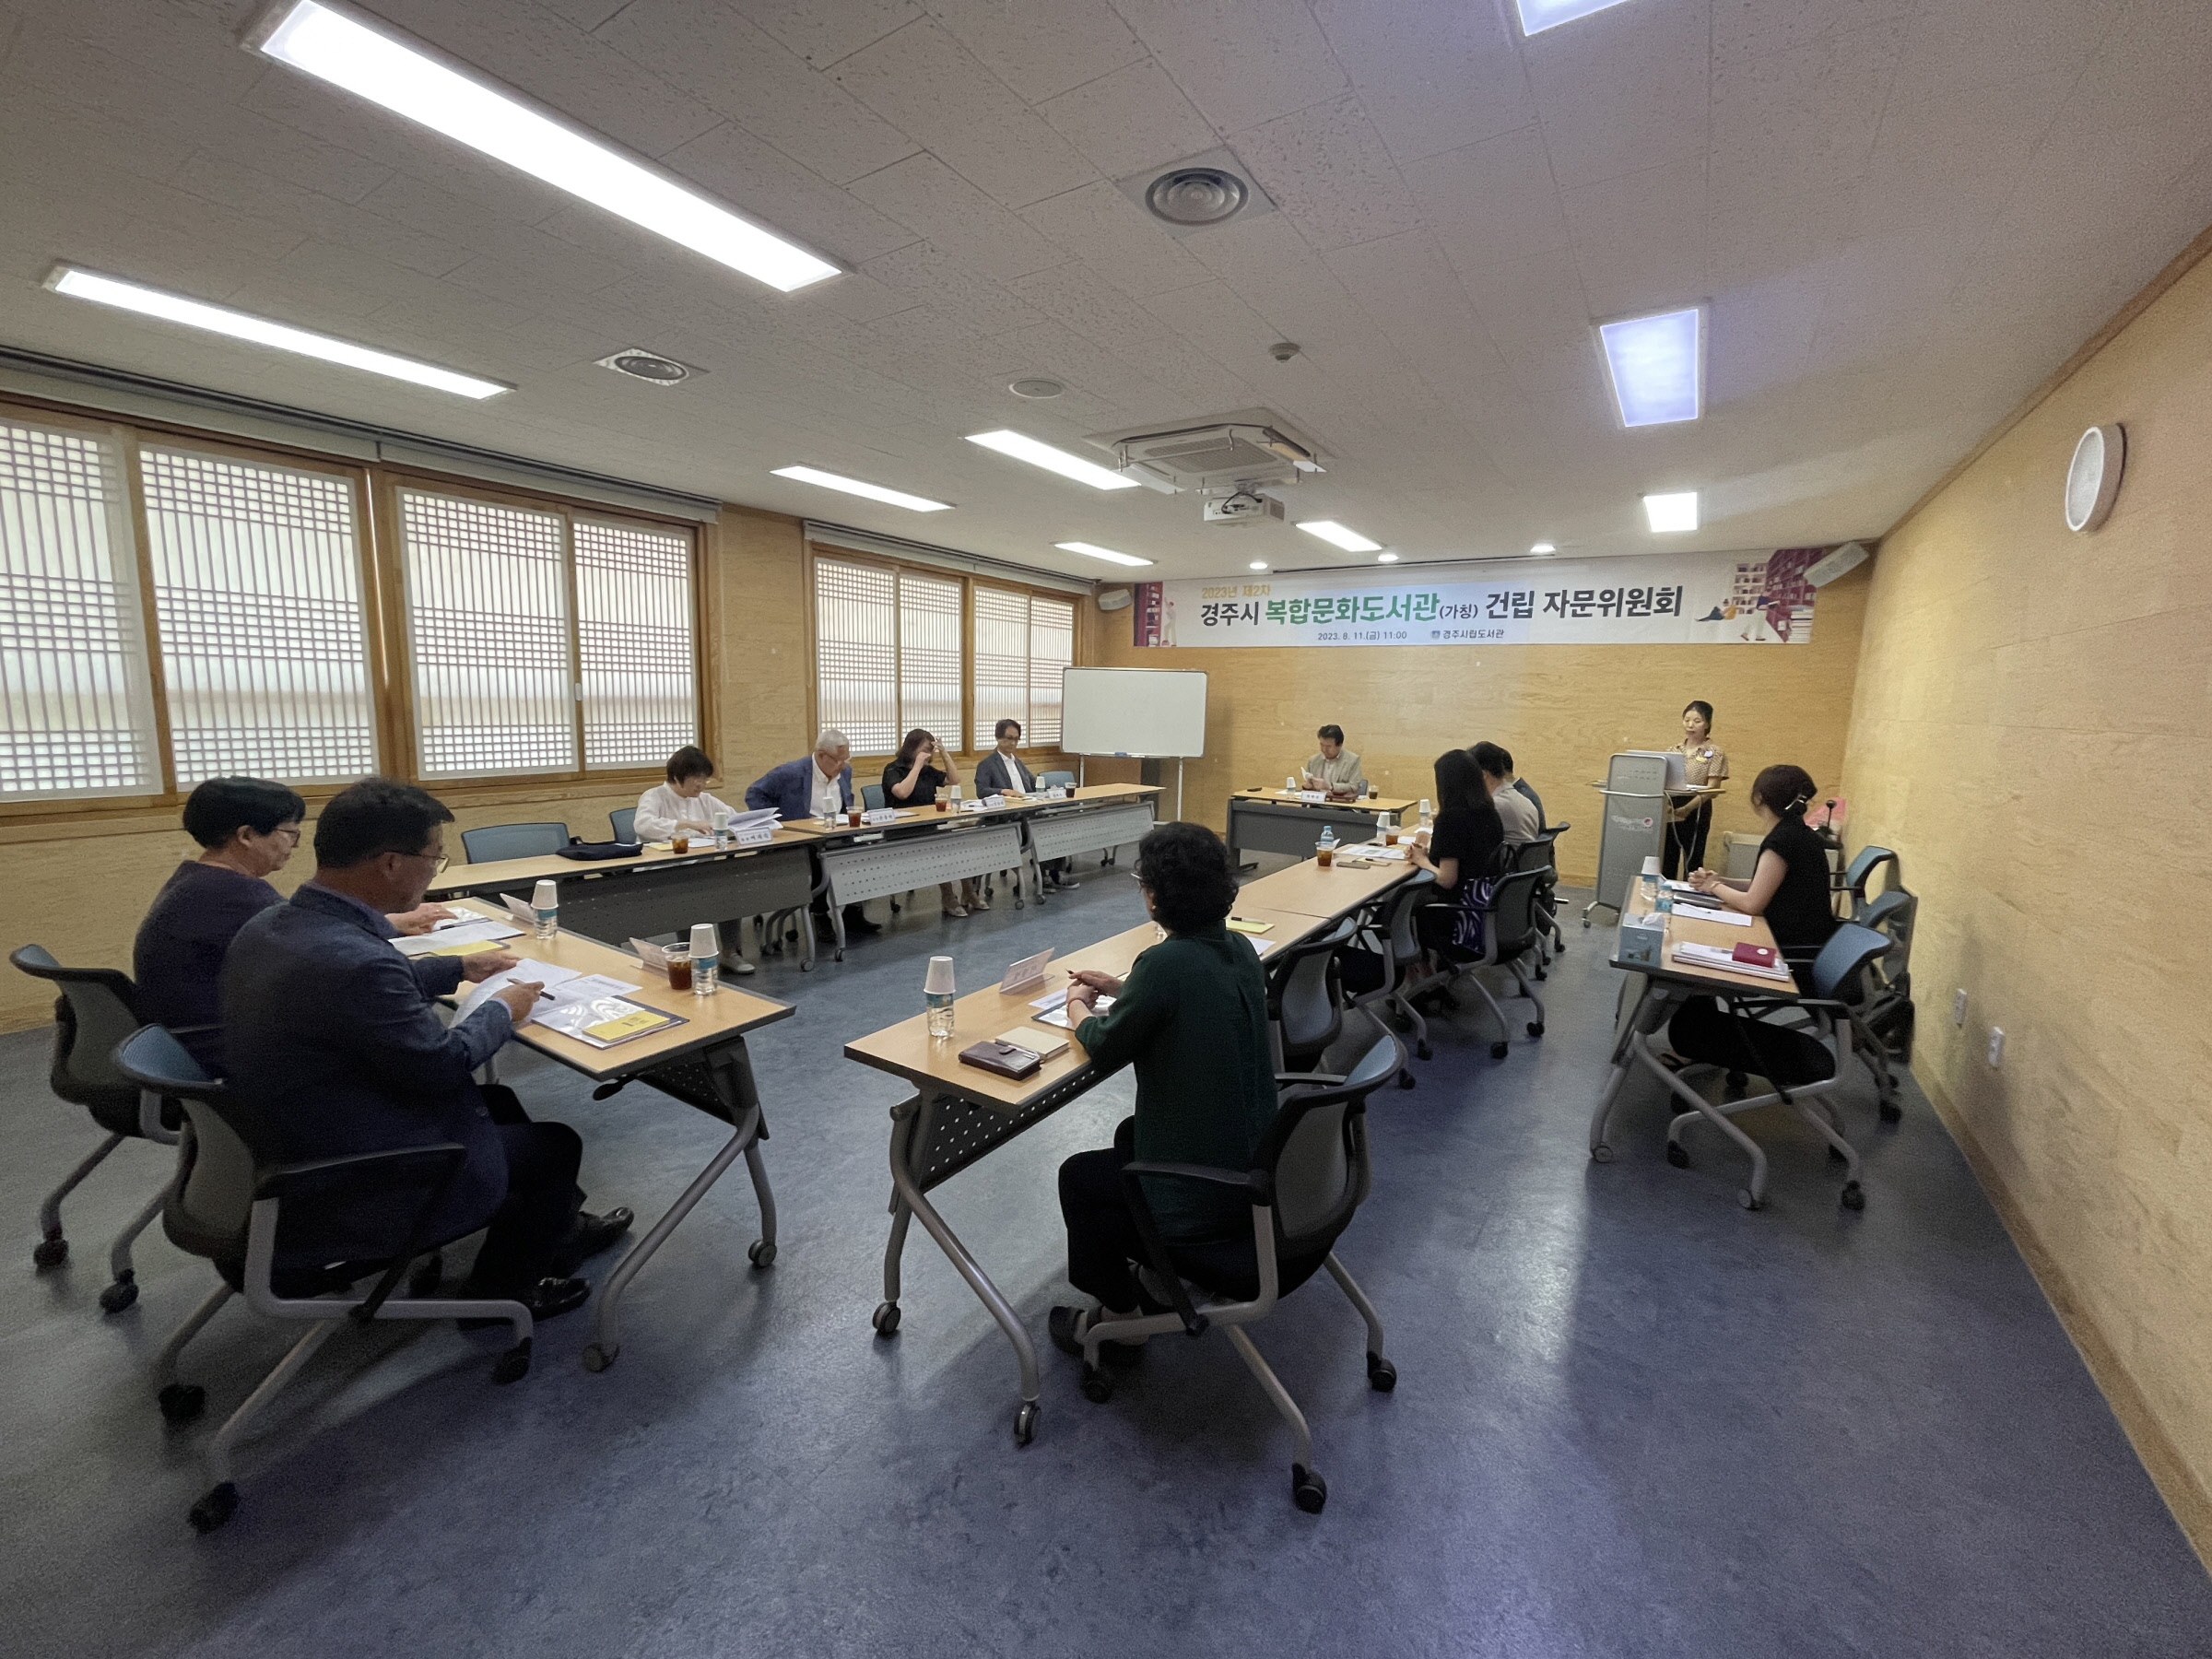 10일 시립도서관에서 복합문화도서관(가칭) 건립을 위한  자문위원회 회의가 진행되고 있다.